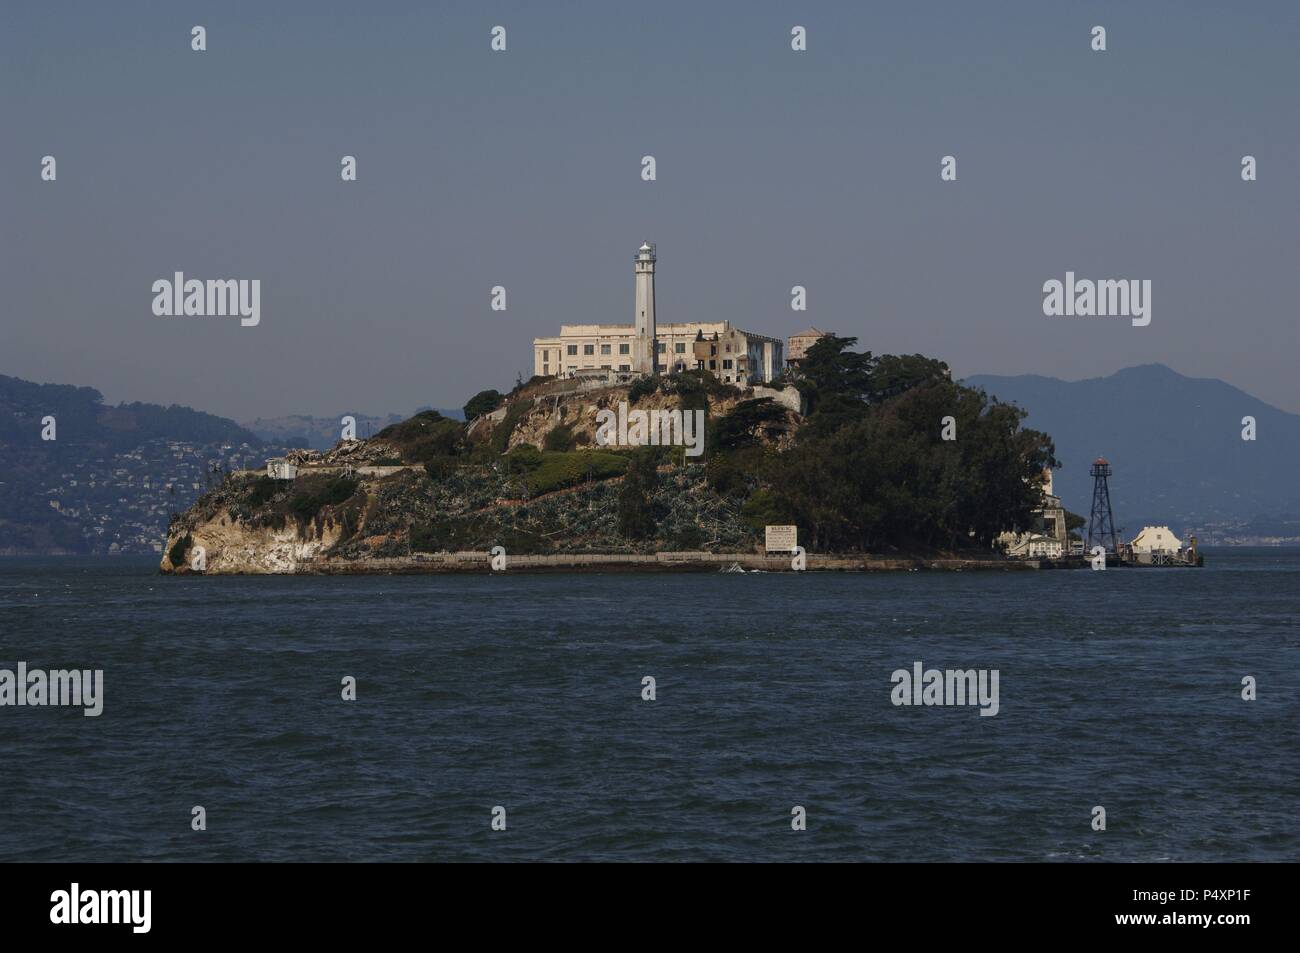 PRISION de la ISLA DE ALCATRAZ. San Francisco. Estado de California. Estados Unidos. Stock Photo